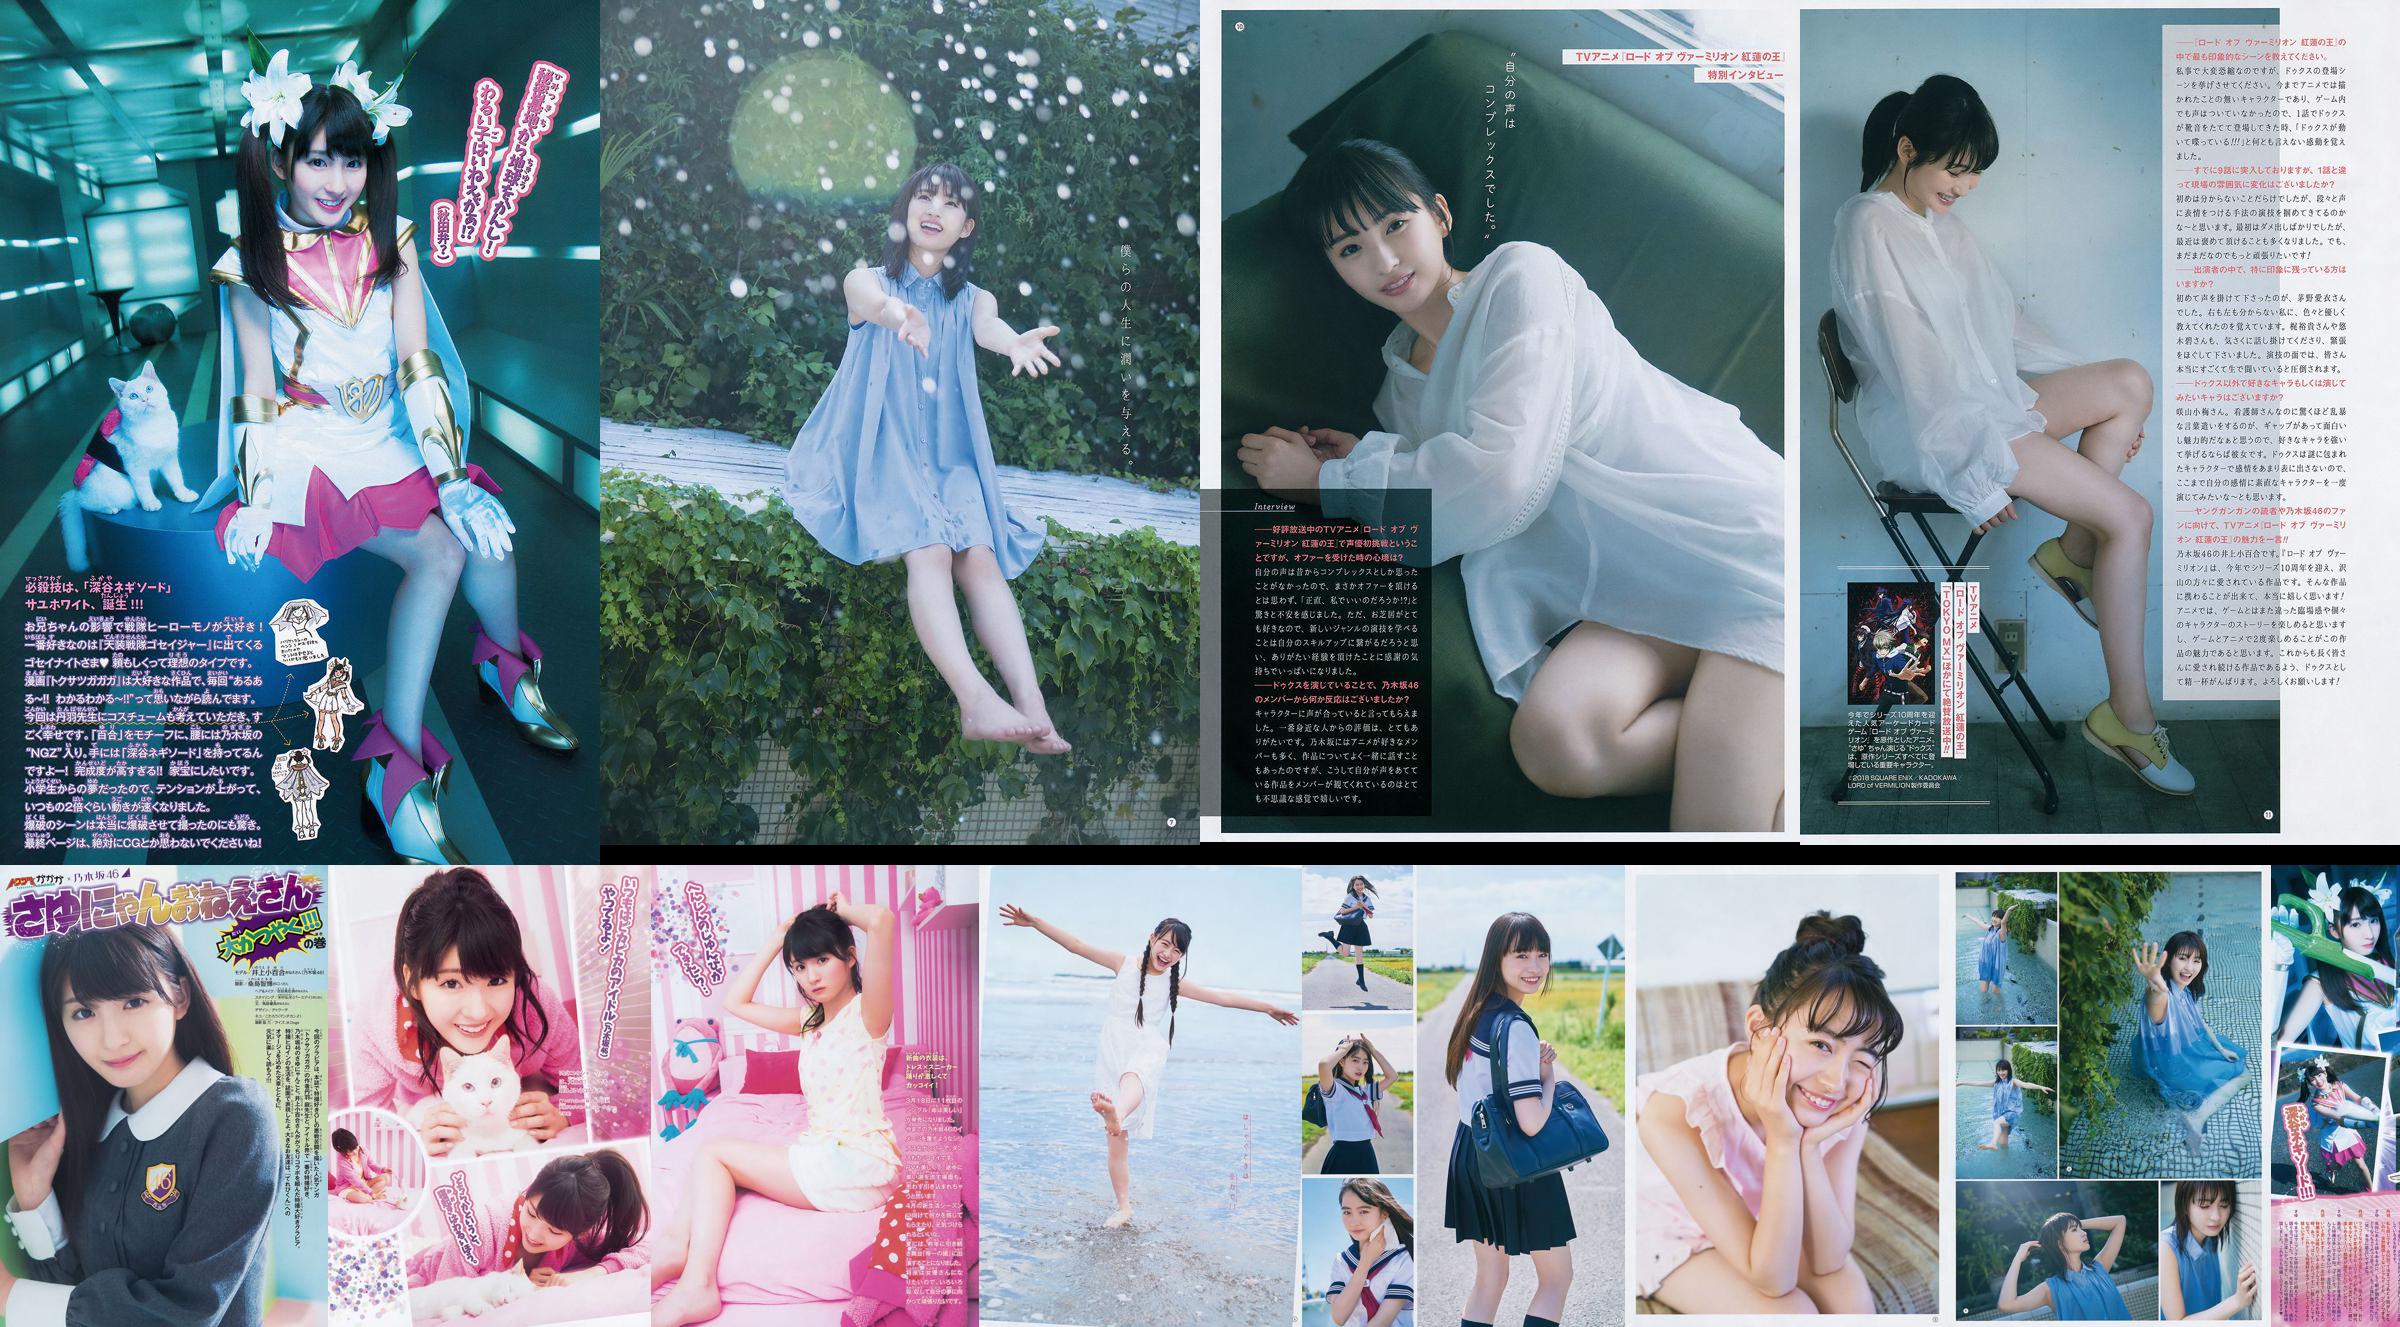 [Young Gangan] Sayuri Inoue Het originele zand 2018 No.18 Photo Magazine No.2c89b7 Pagina 1